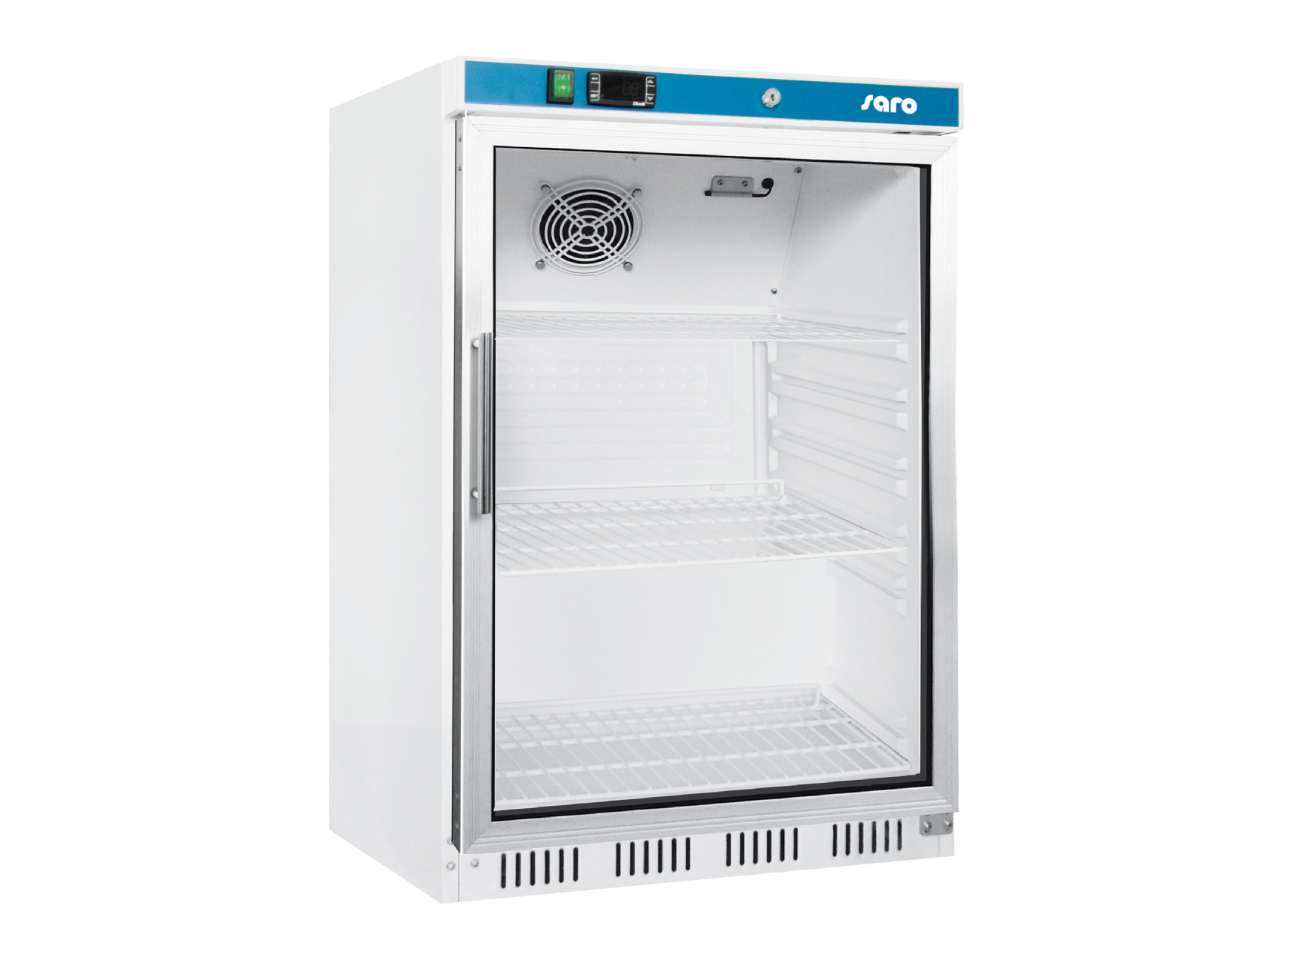 SARO Lagerkühlschrank mit Glastür - weiß Modell HK 200 GD